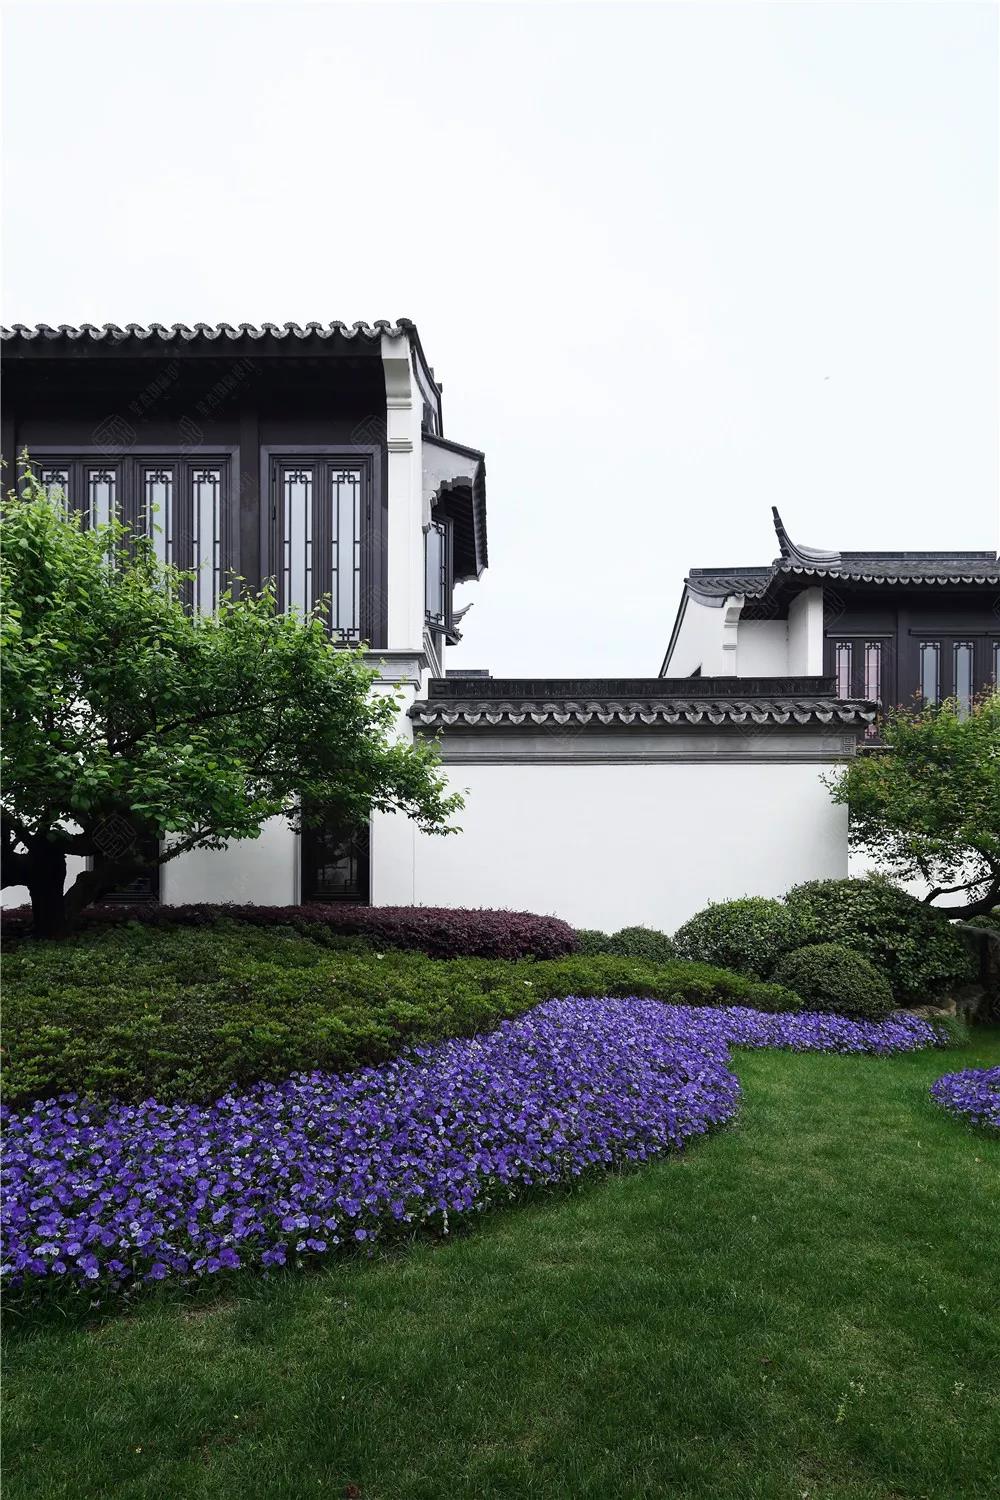 中国十大豪宅之一的绿城桃花源绝美装修实景流出太惊艳了